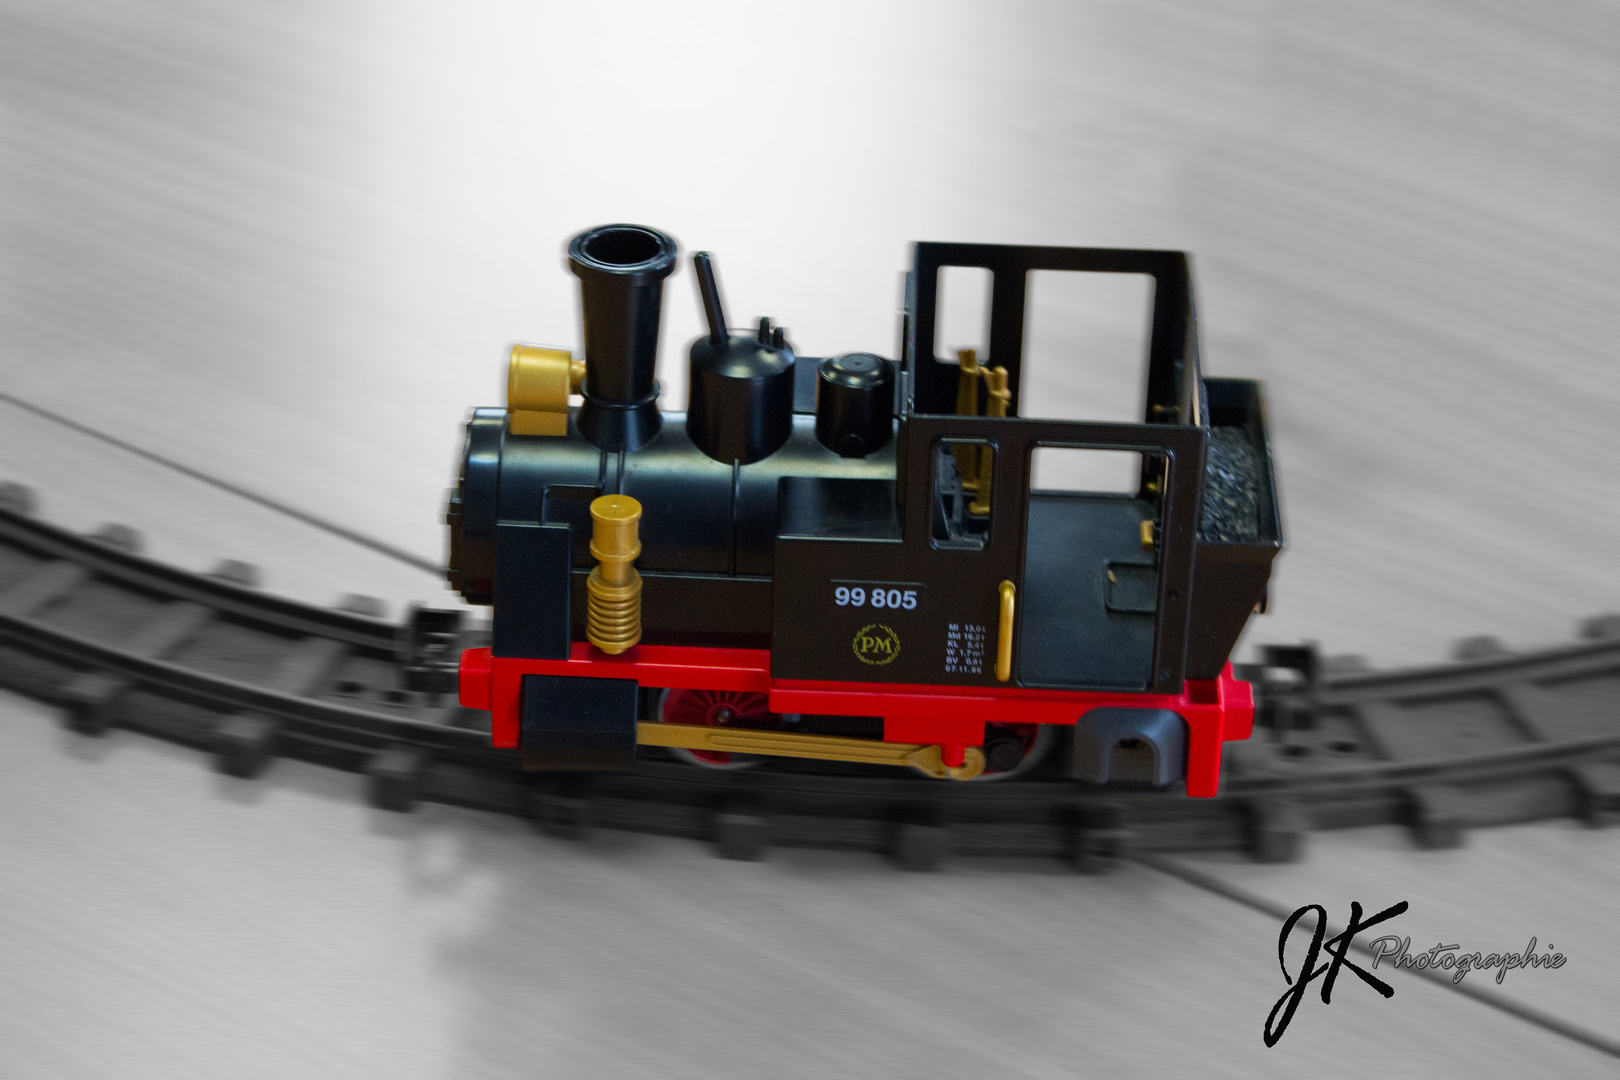 Spielzeug-Eisenbahn